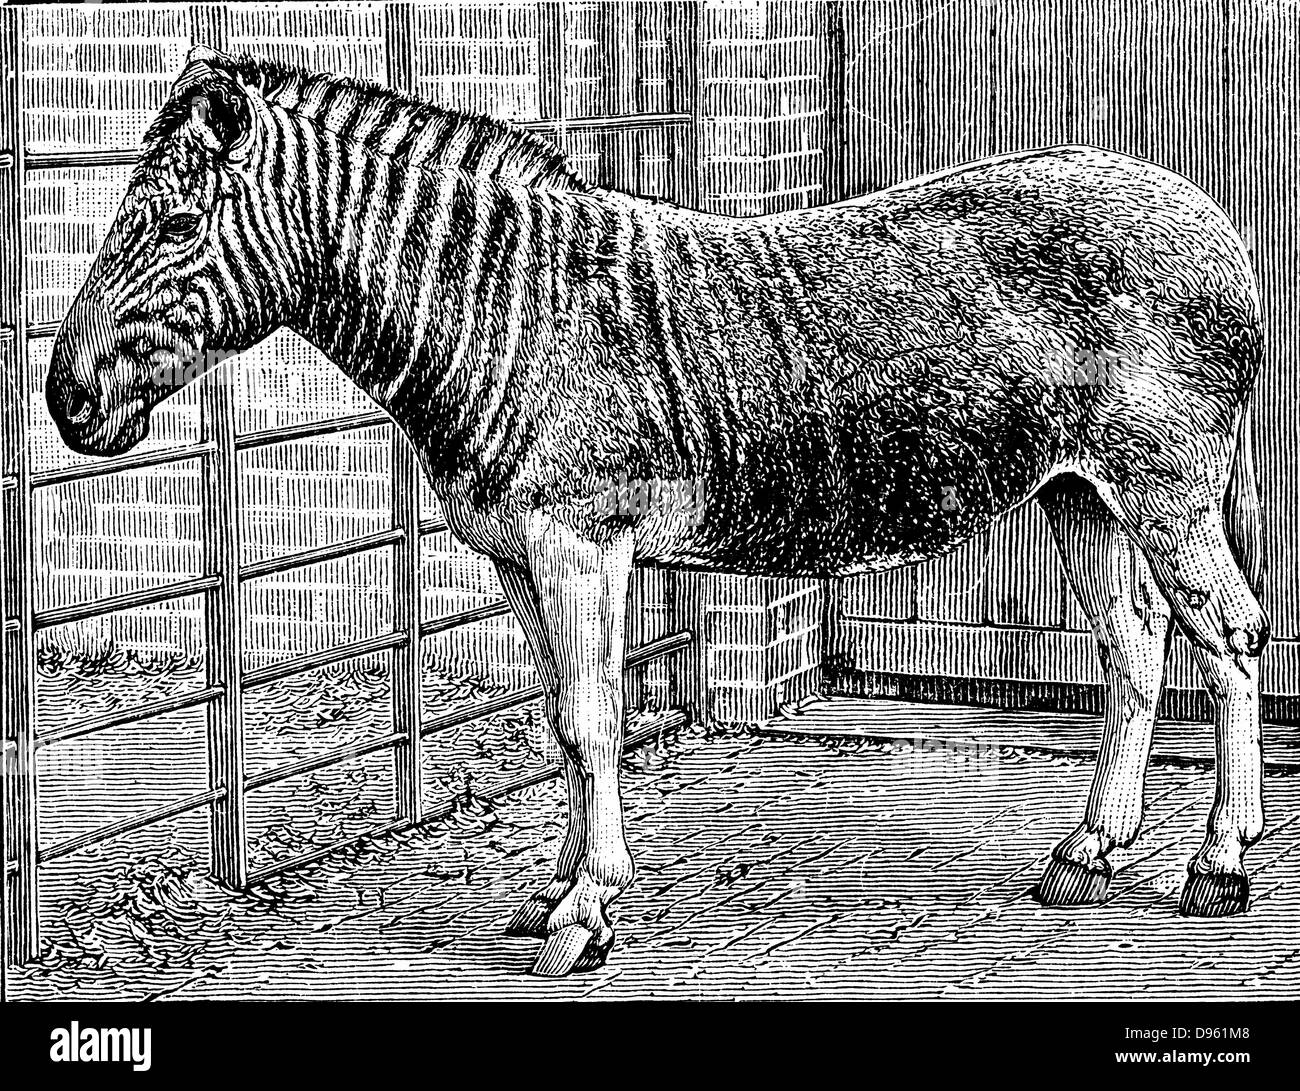 Quagga (Equus quagga): Ausgestorben Südafrikanischen Säugetier des Pferdes Familie. Gravur Foto von Frederick York von London, c 1870, von Quagga Mare im Zoo von London, England. Stockfoto